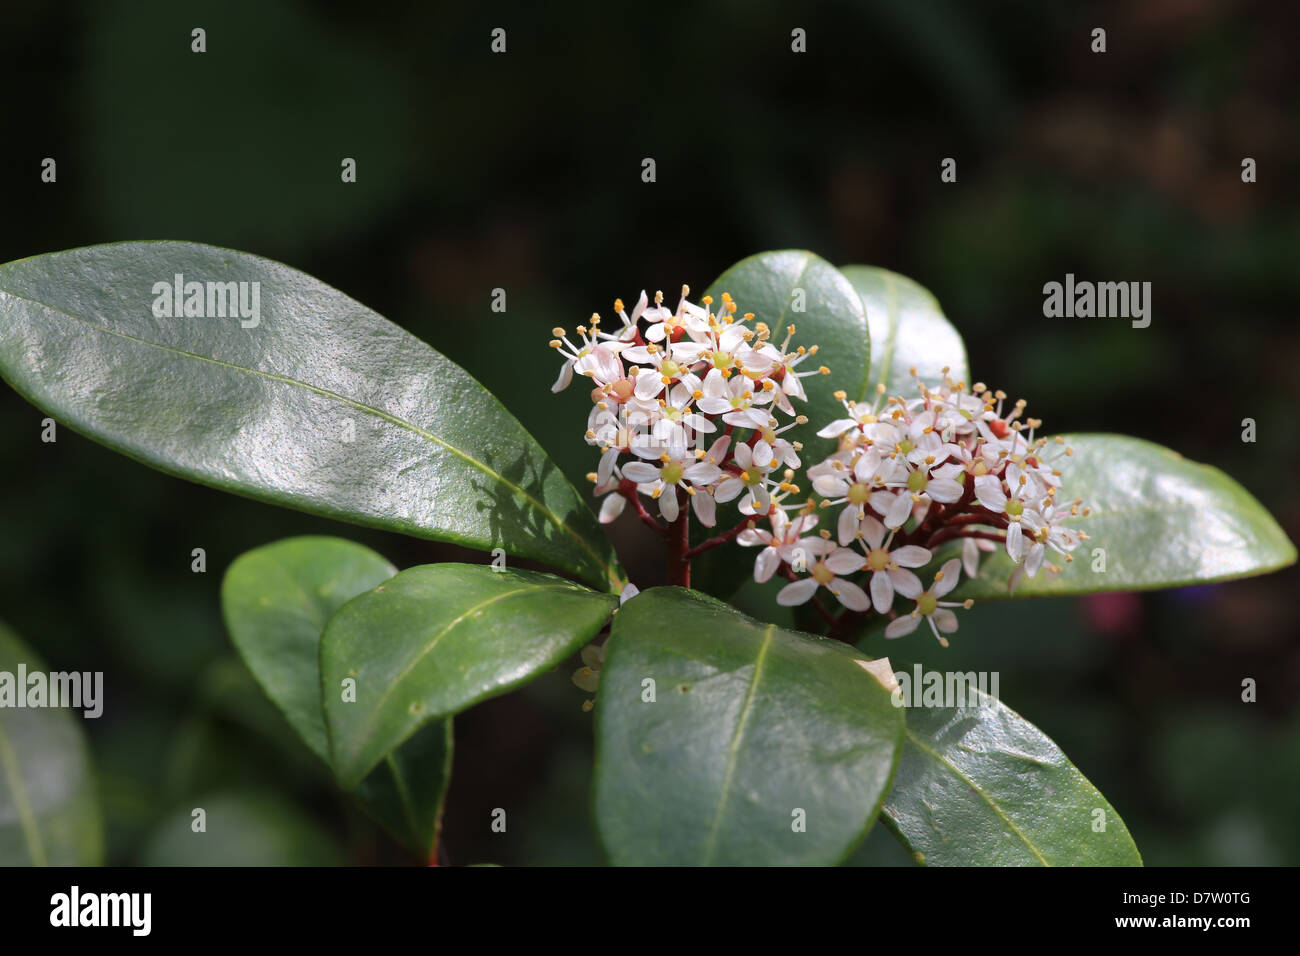 Close-up photo of Skimmia blossom, May 2013 Stock Photo